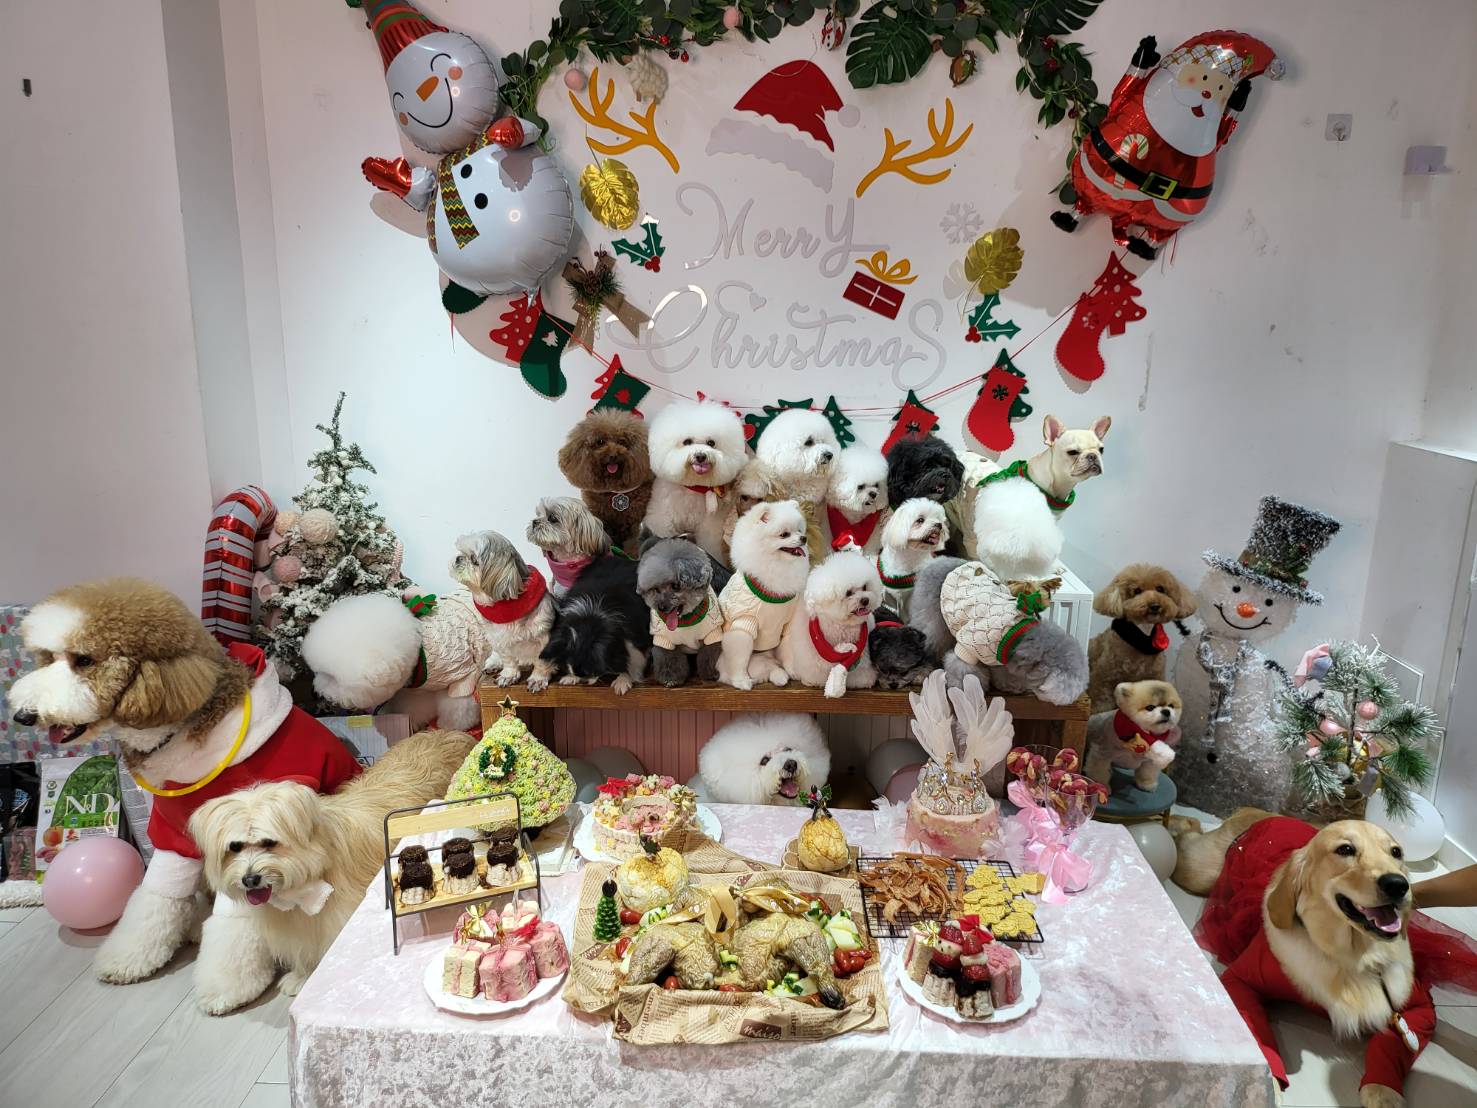 Giáng sinh năm nay, La Chí Tường đã tổ chức bữa tiệc cho những chú chó đã từng bị bỏ rơi. (Nguồn ảnh: Lâm Thuần Ngọc  - Tổng biên tập của Thời báo Di dân mới toàn cầu)